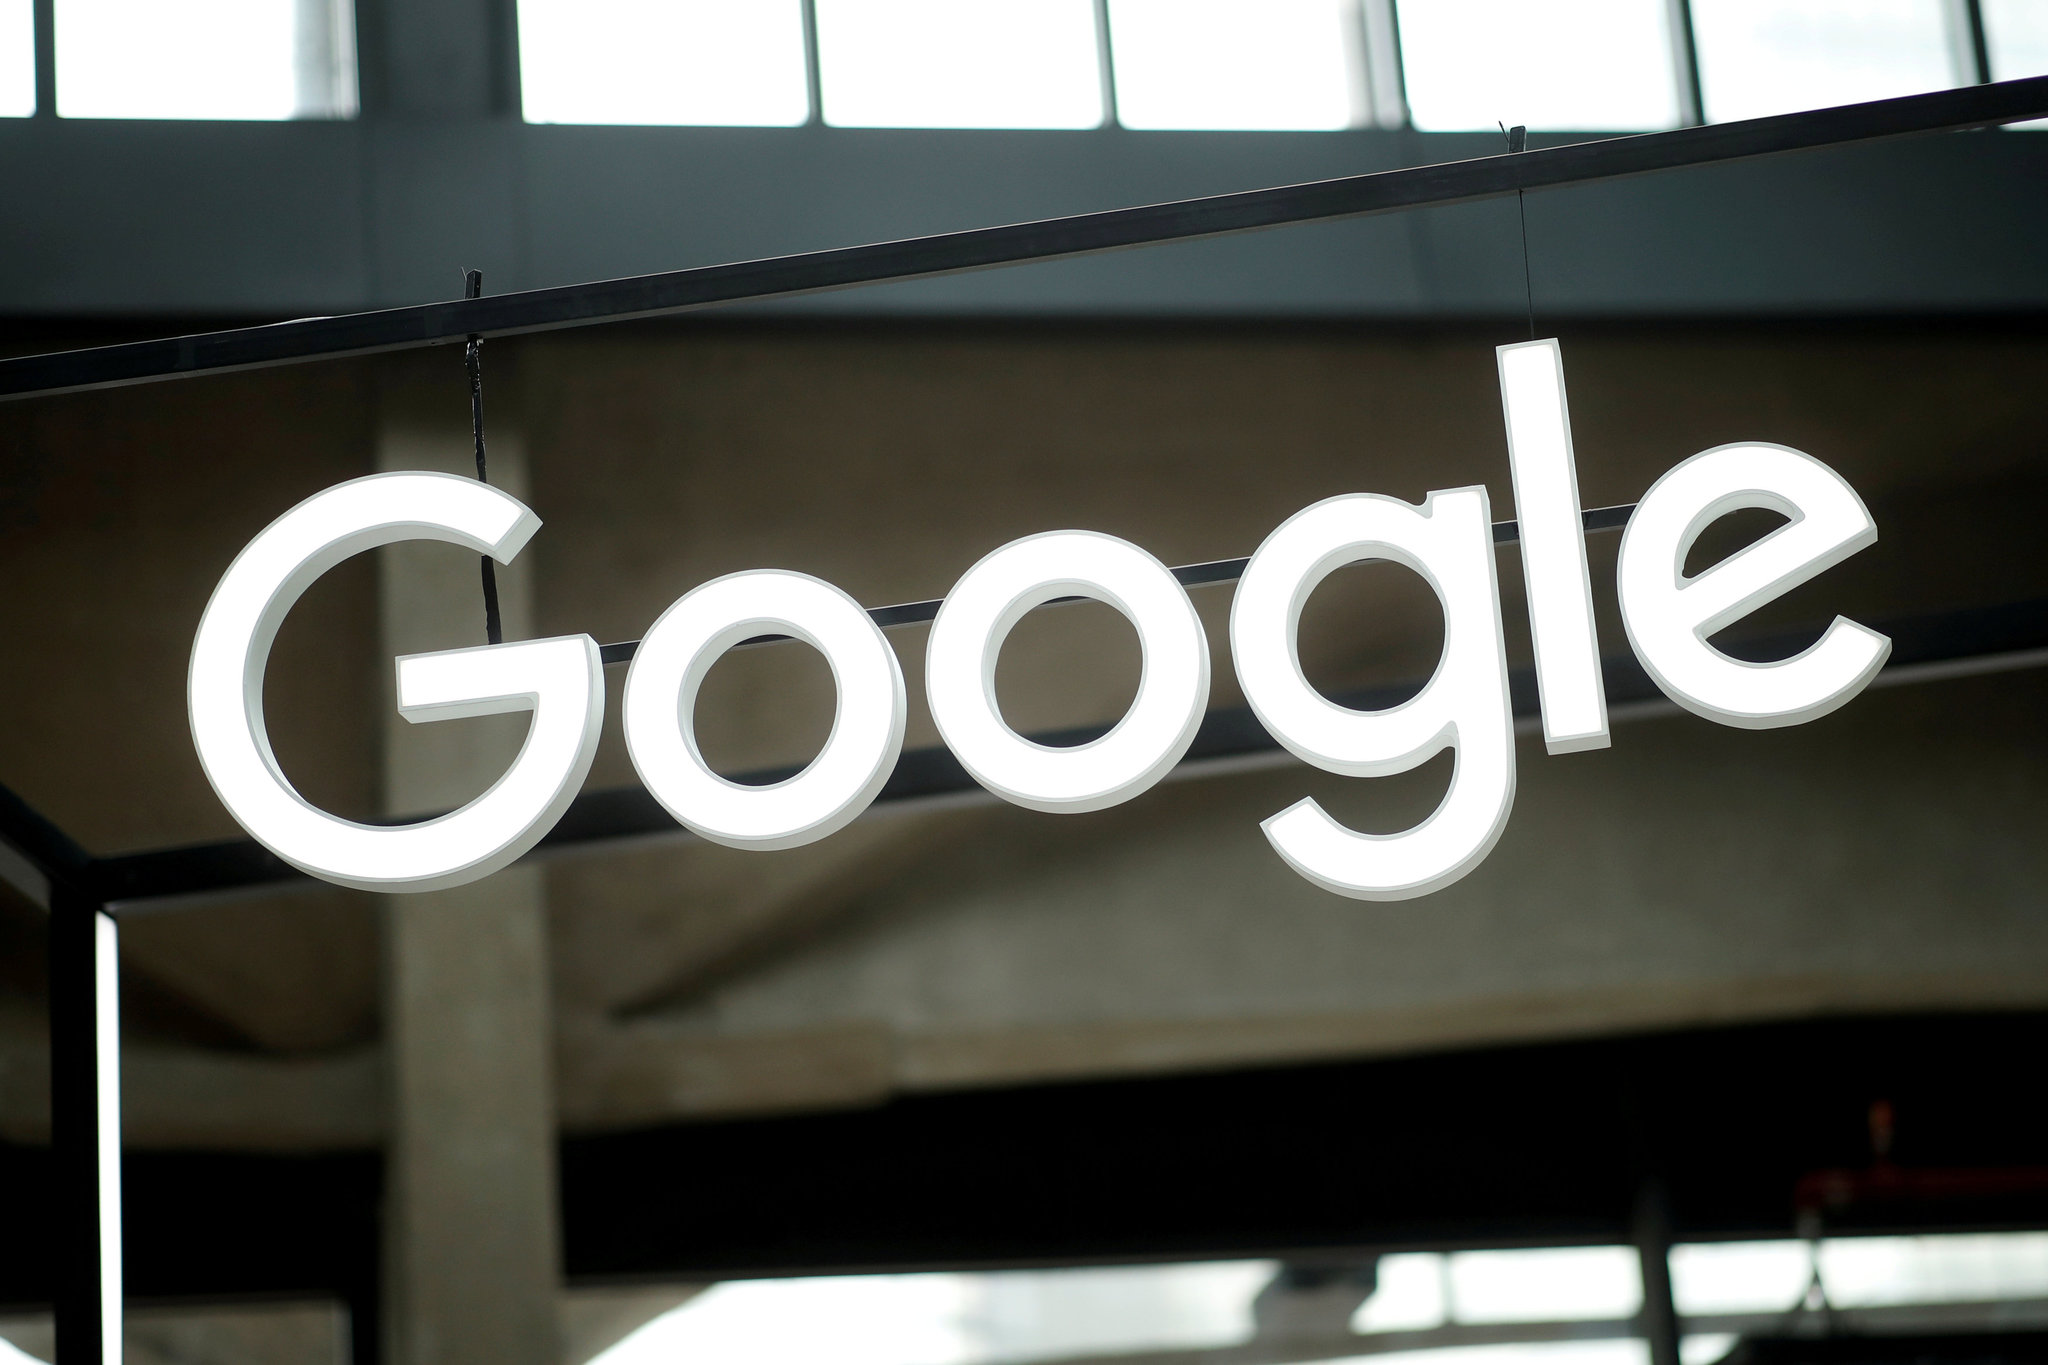 Google milyarlarca dolarlık para cezasına çarptırılabilir